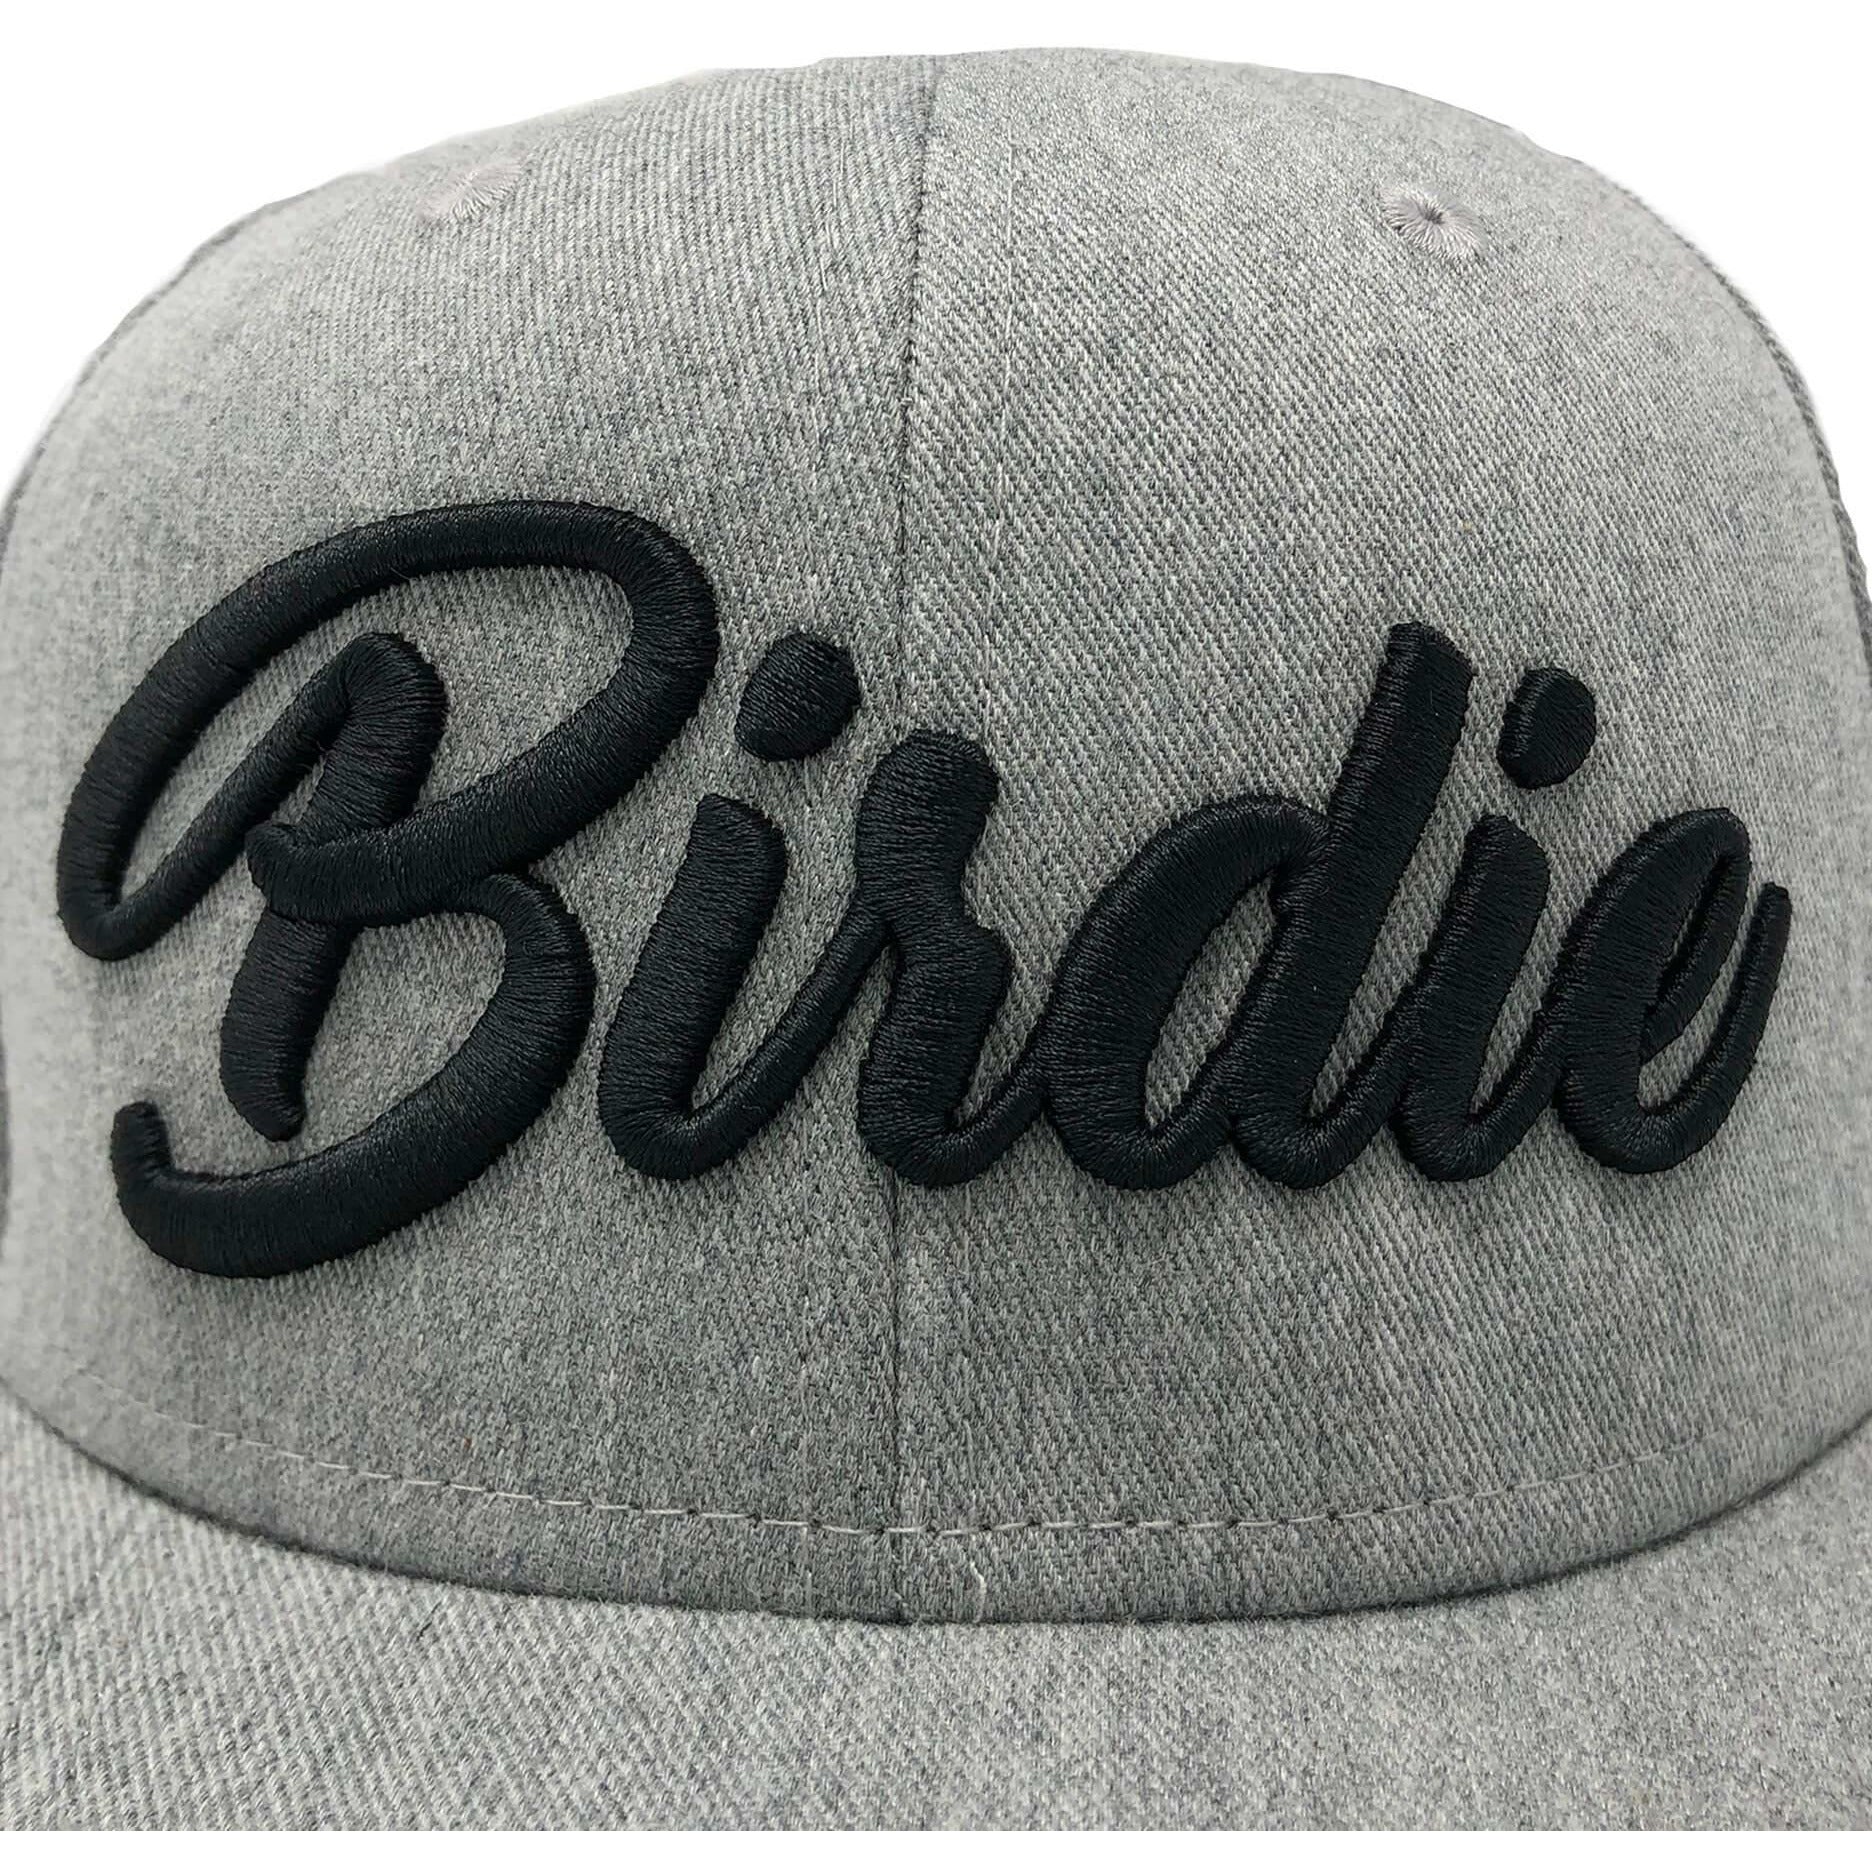 Birdie Hat - Grey on Black - Birdie Threads